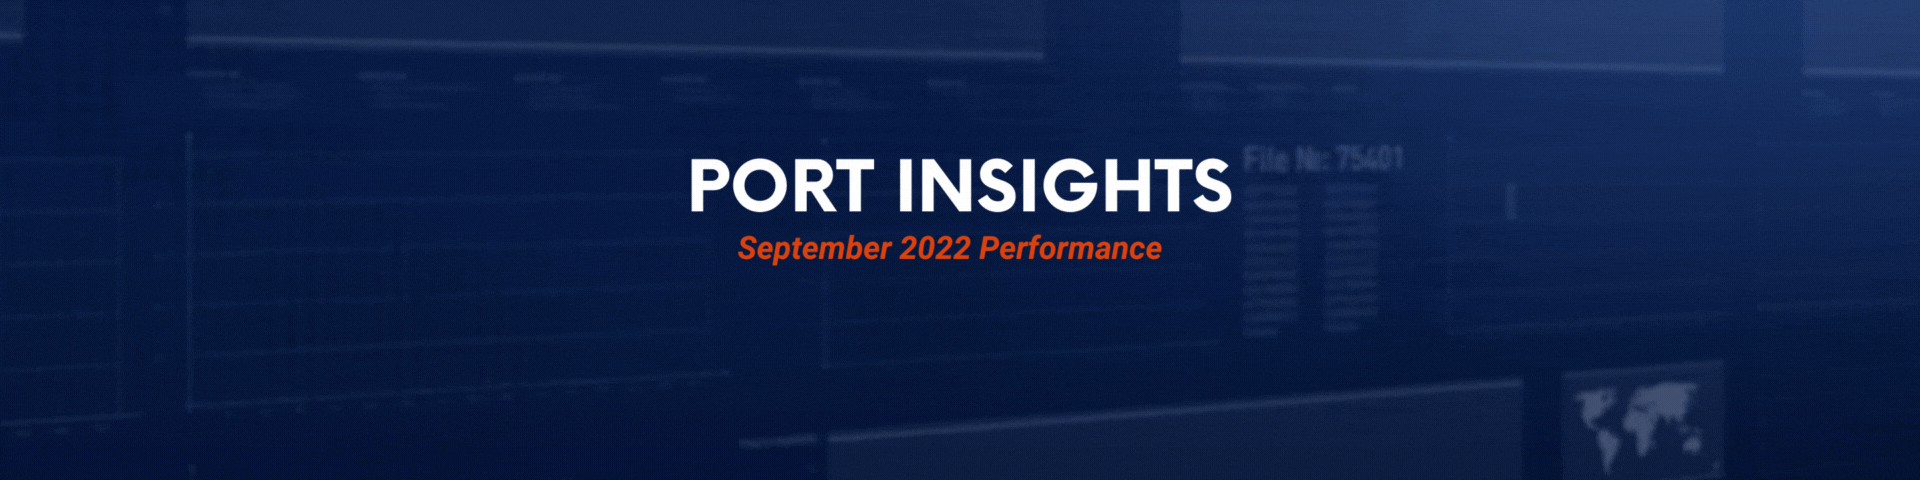 port insights header 